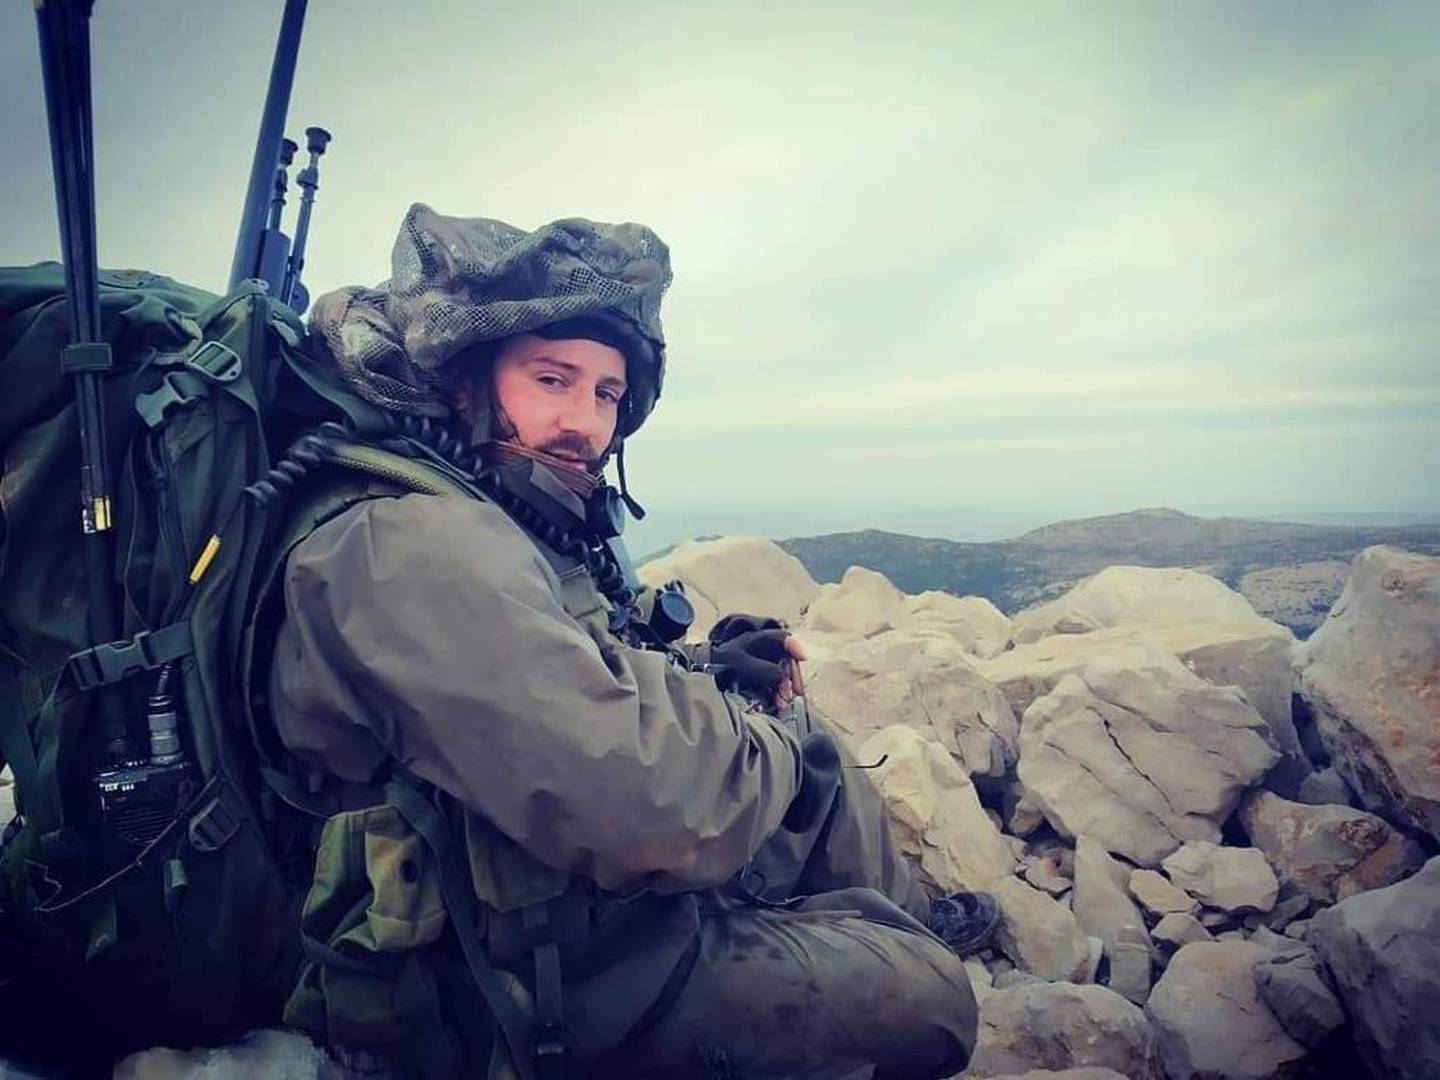 Lior, especialista en seguridad en Israel, que también es sargento mayor en una unidad de francotiradores en la reserva del ejército de Israel , en uno de sus servicios en la frontera con Líbano.